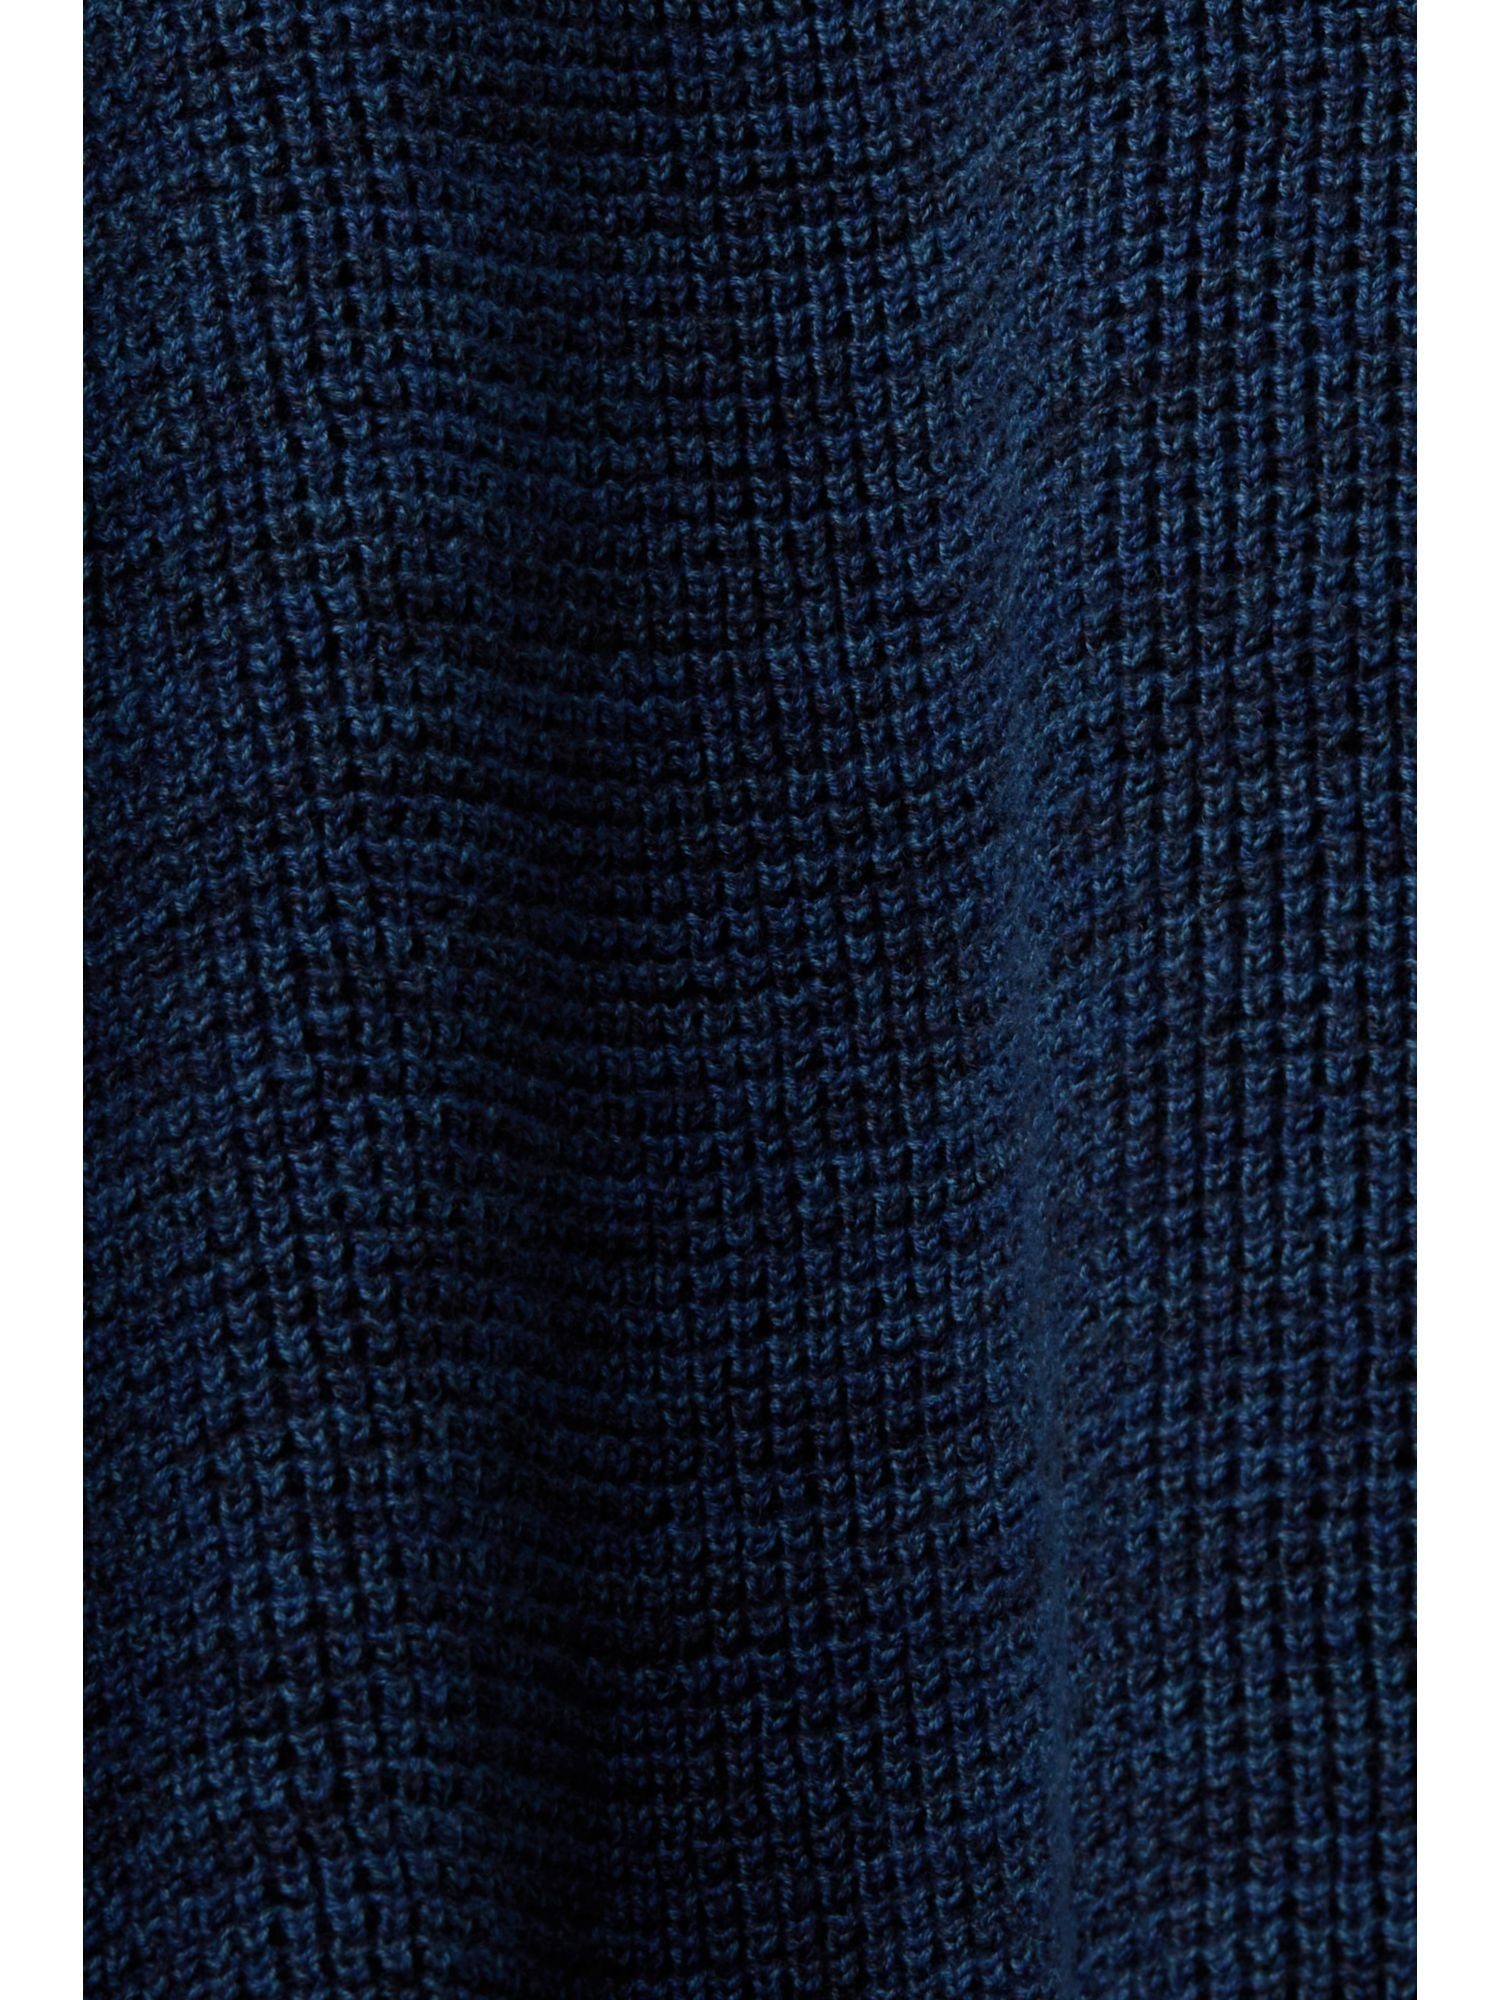 Strickjacke (1-tlg) NAVY Cardigan V-Ausschnitt, Baumwolle mit Esprit % 100